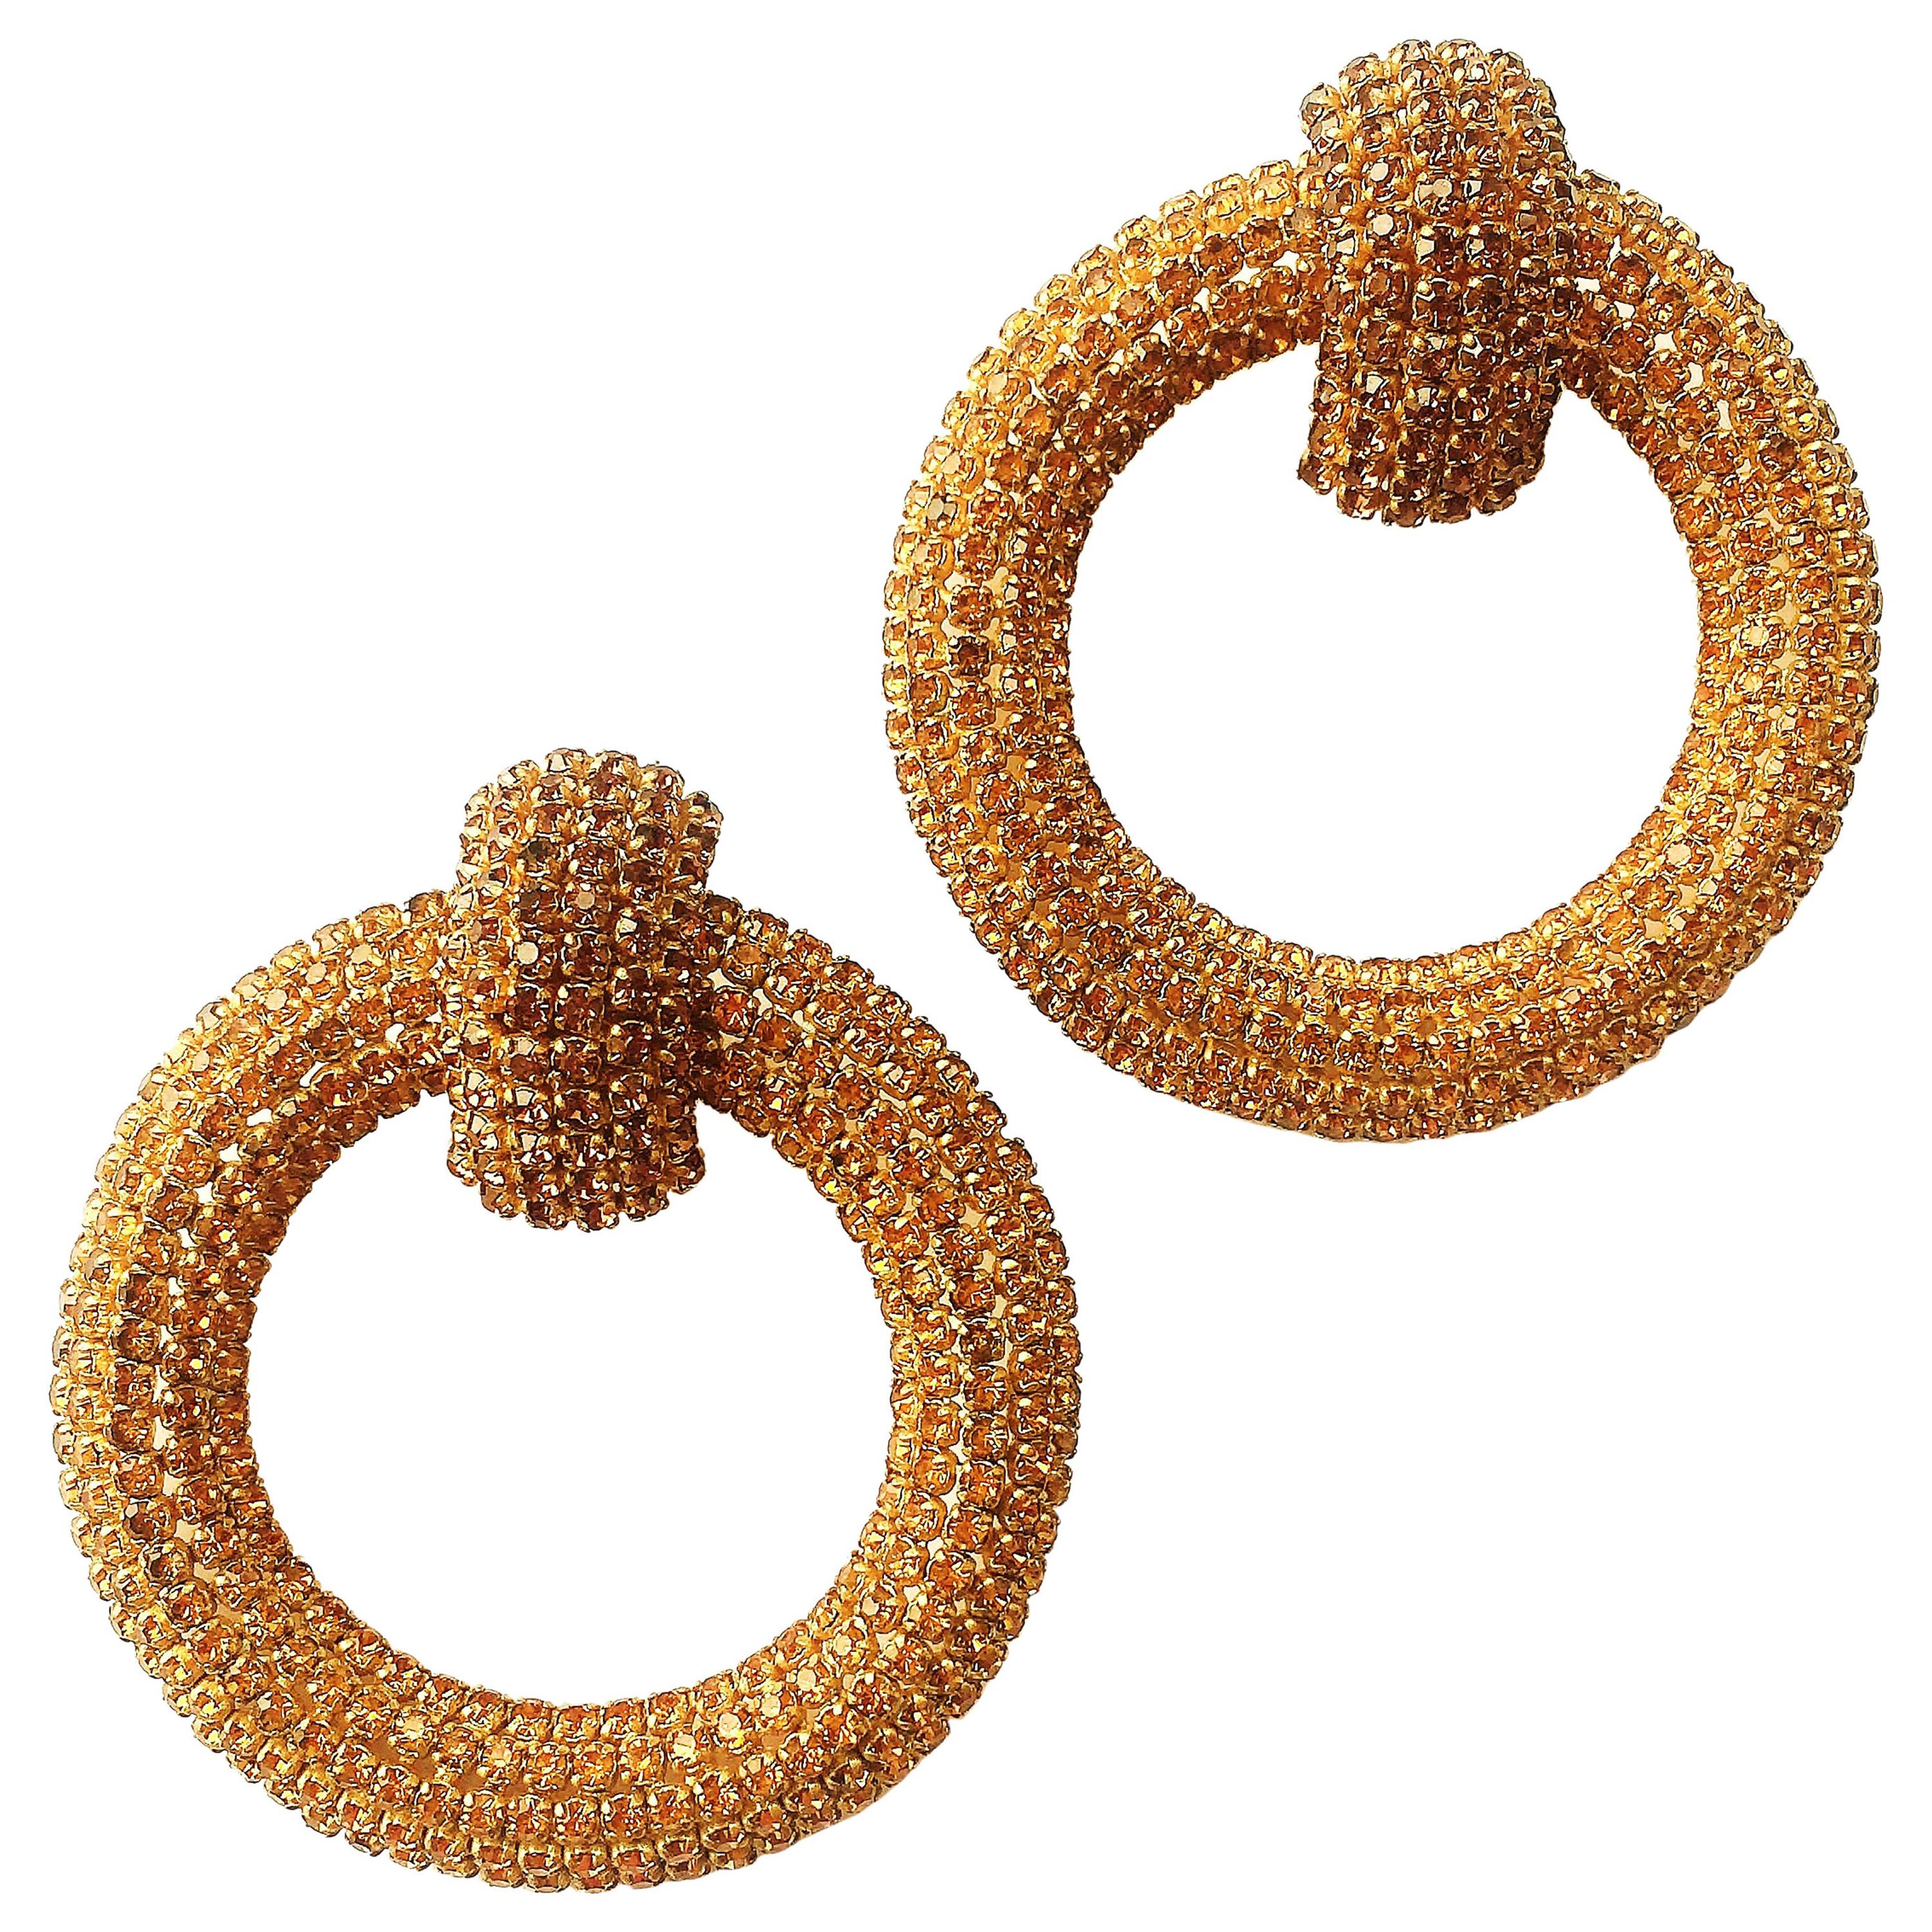  Very spectacular golden paste 'hoop' earrings, Roger JeanPierre, France, 1960s.